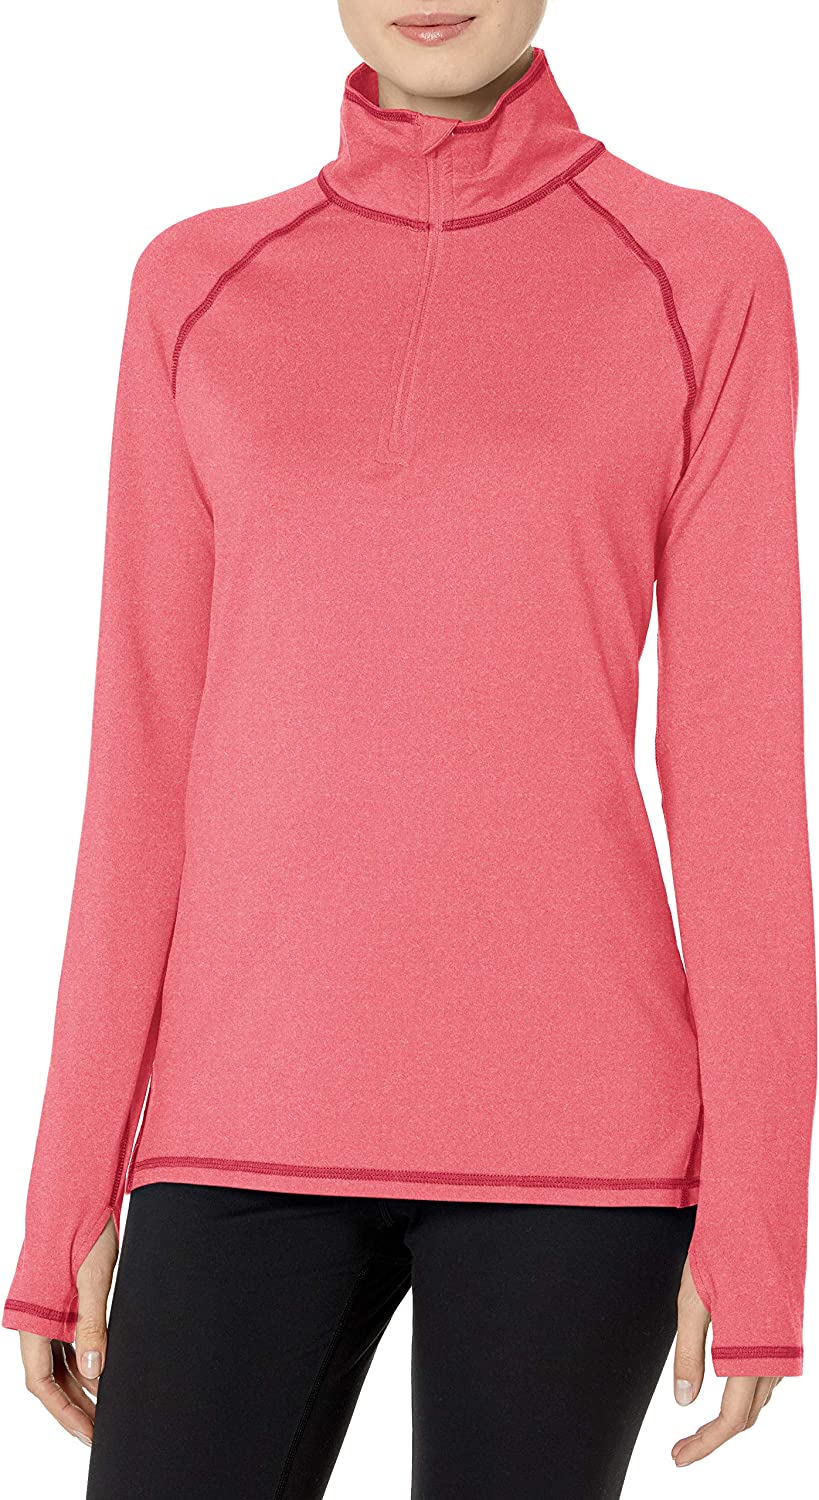 Hanes Sport Women's Performance Fleece Quarter Zip Pullover | eBay